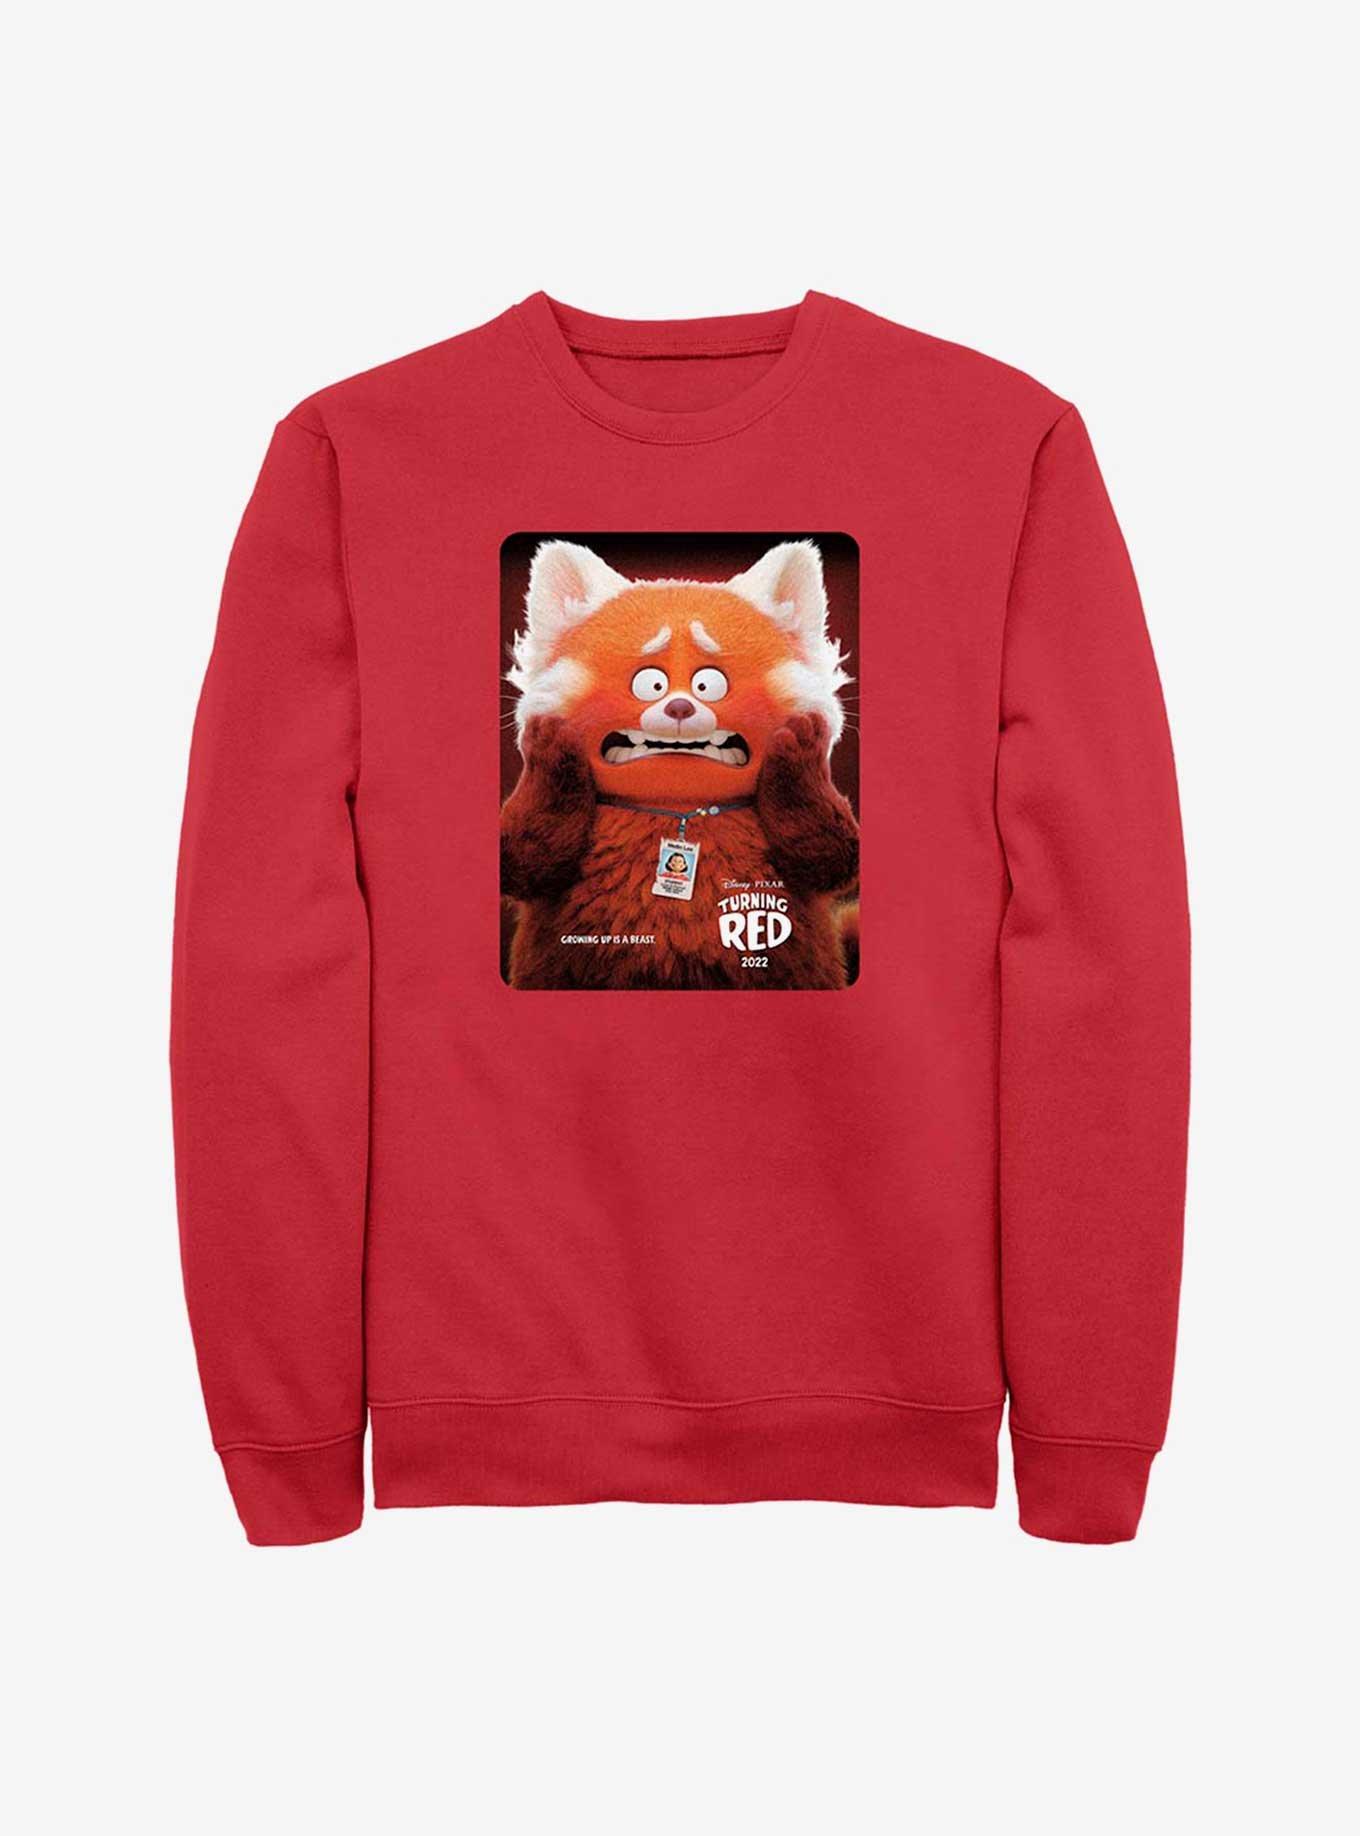 Disney Pixar Turning Red Panda Poster Sweatshirt, RED, hi-res